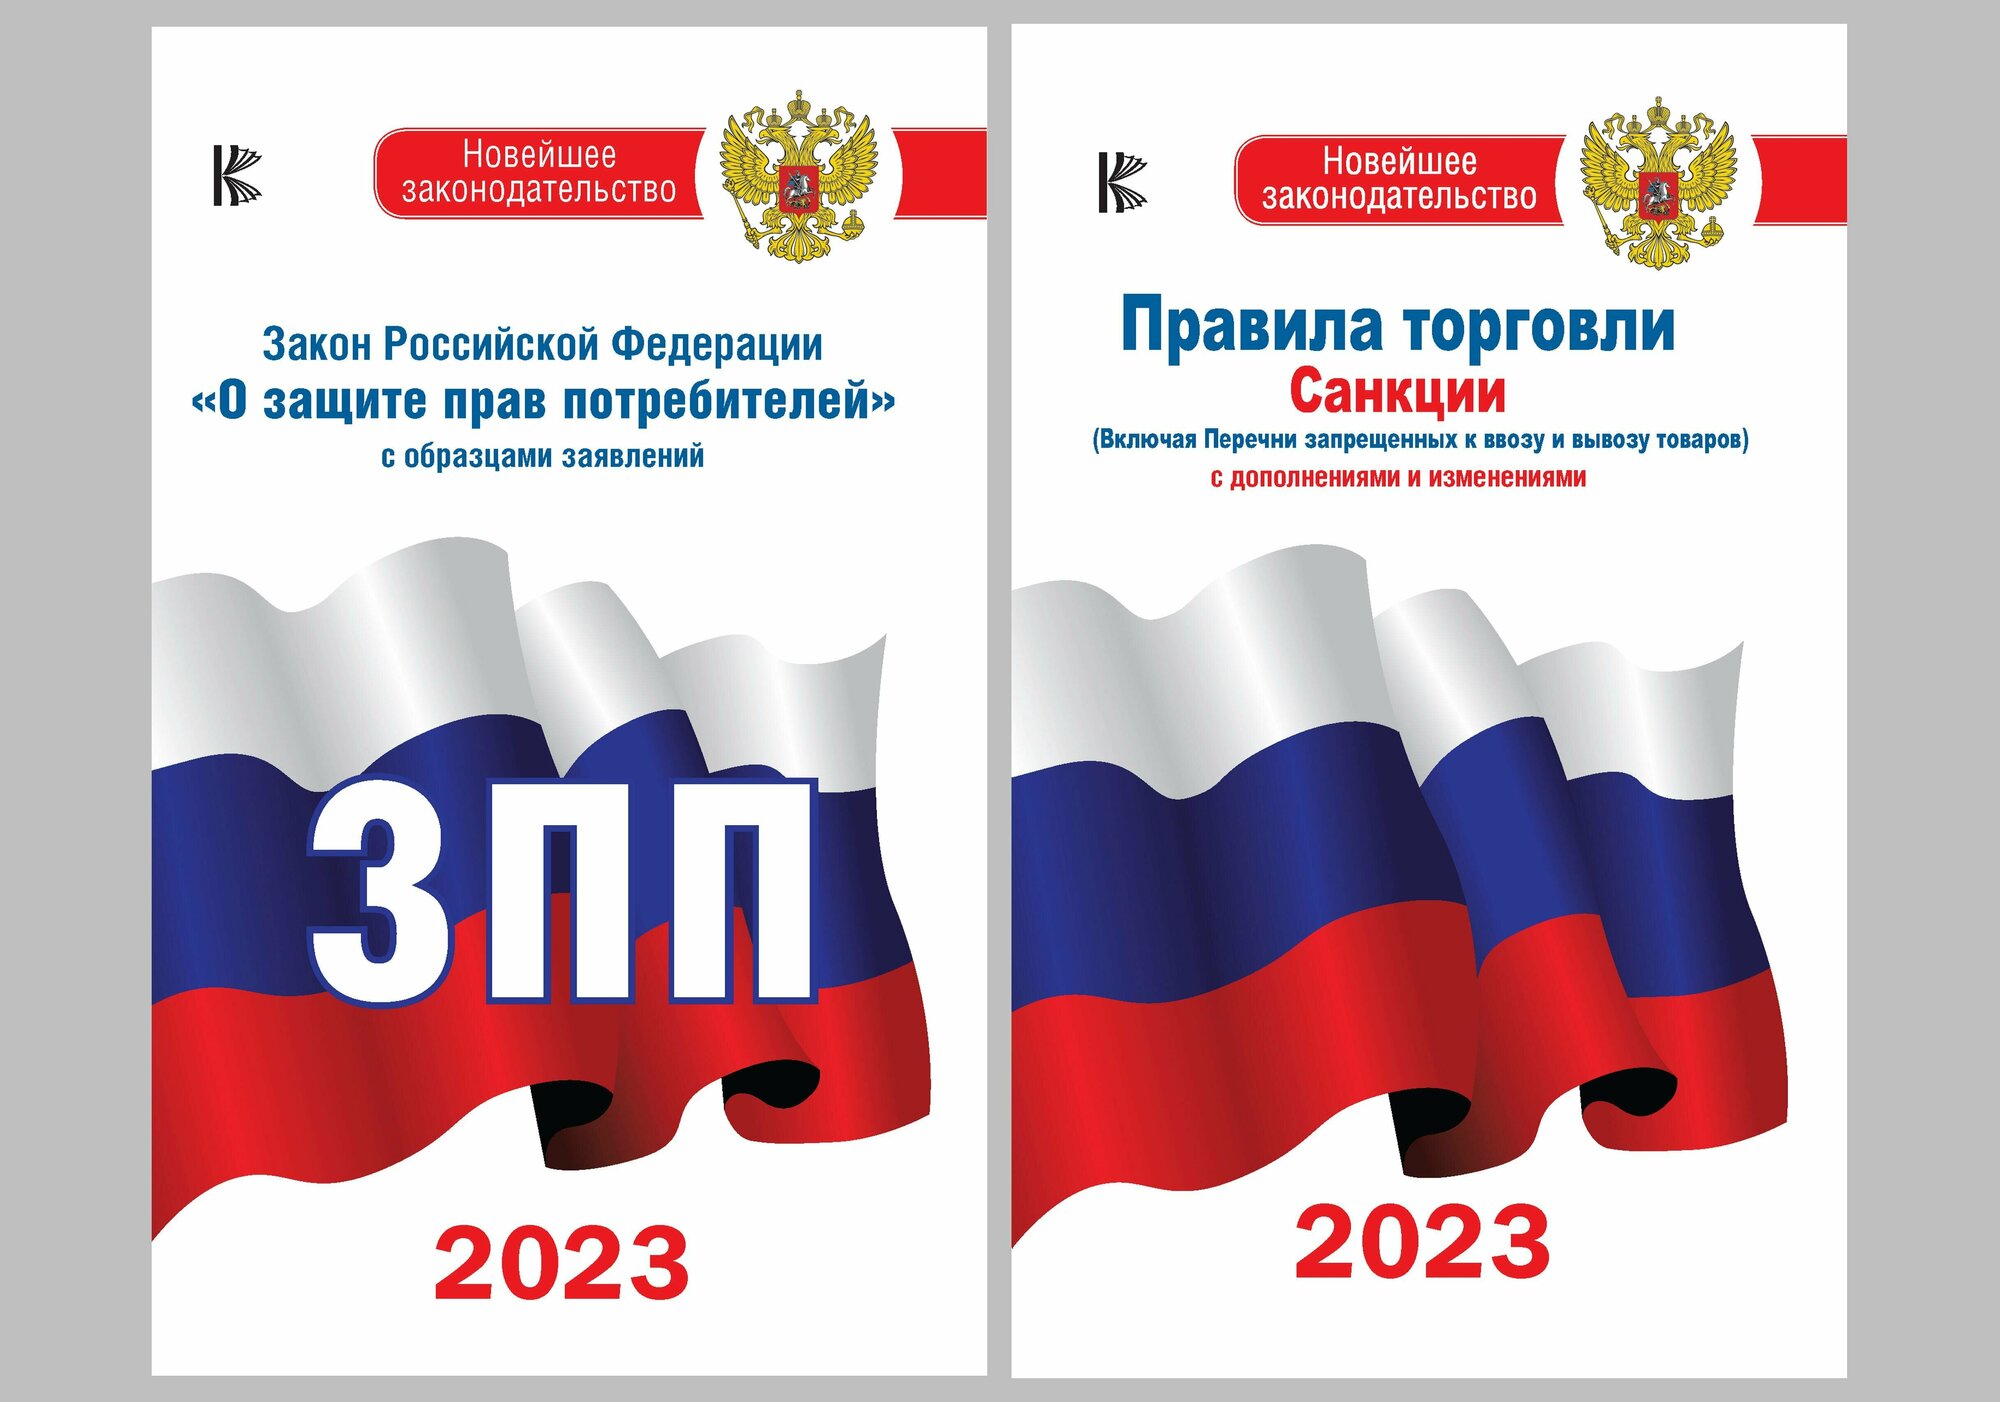 Комплект из 2-х книг: Закон РФ " О защите прав потребителей" на 2023 год, Правила торговли с изменениями и дополнениями на 2023 год .